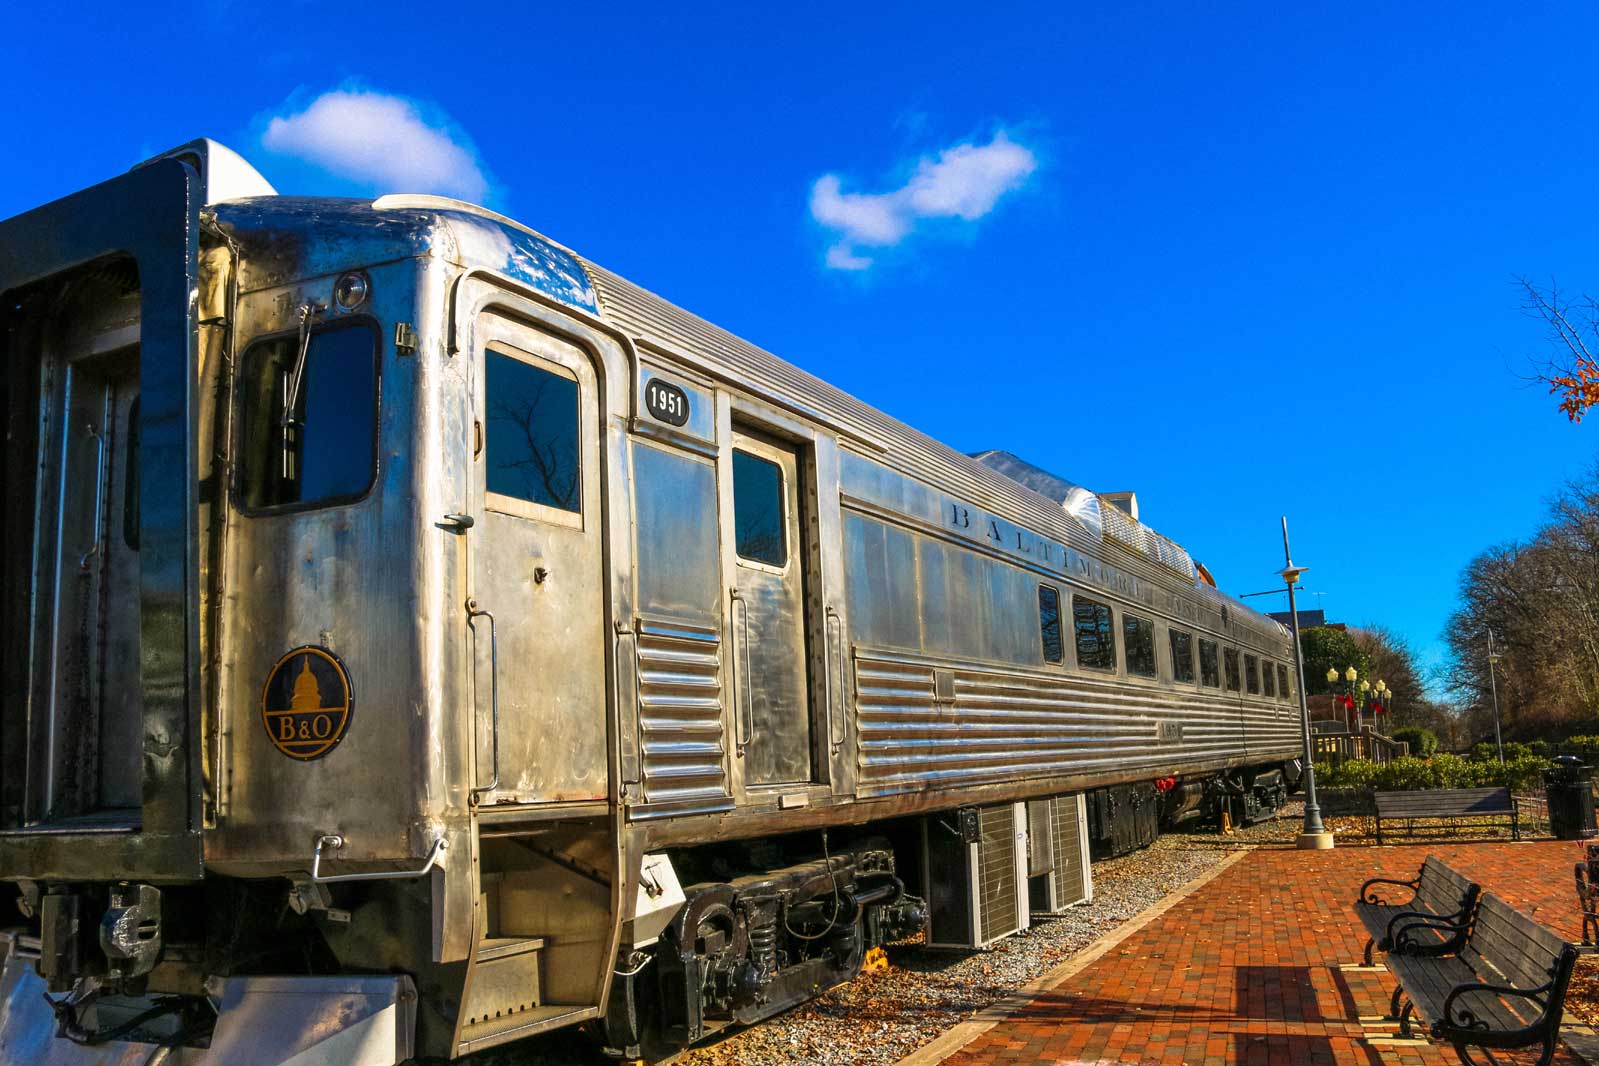 B&O rail car in Gaithersburg, MD